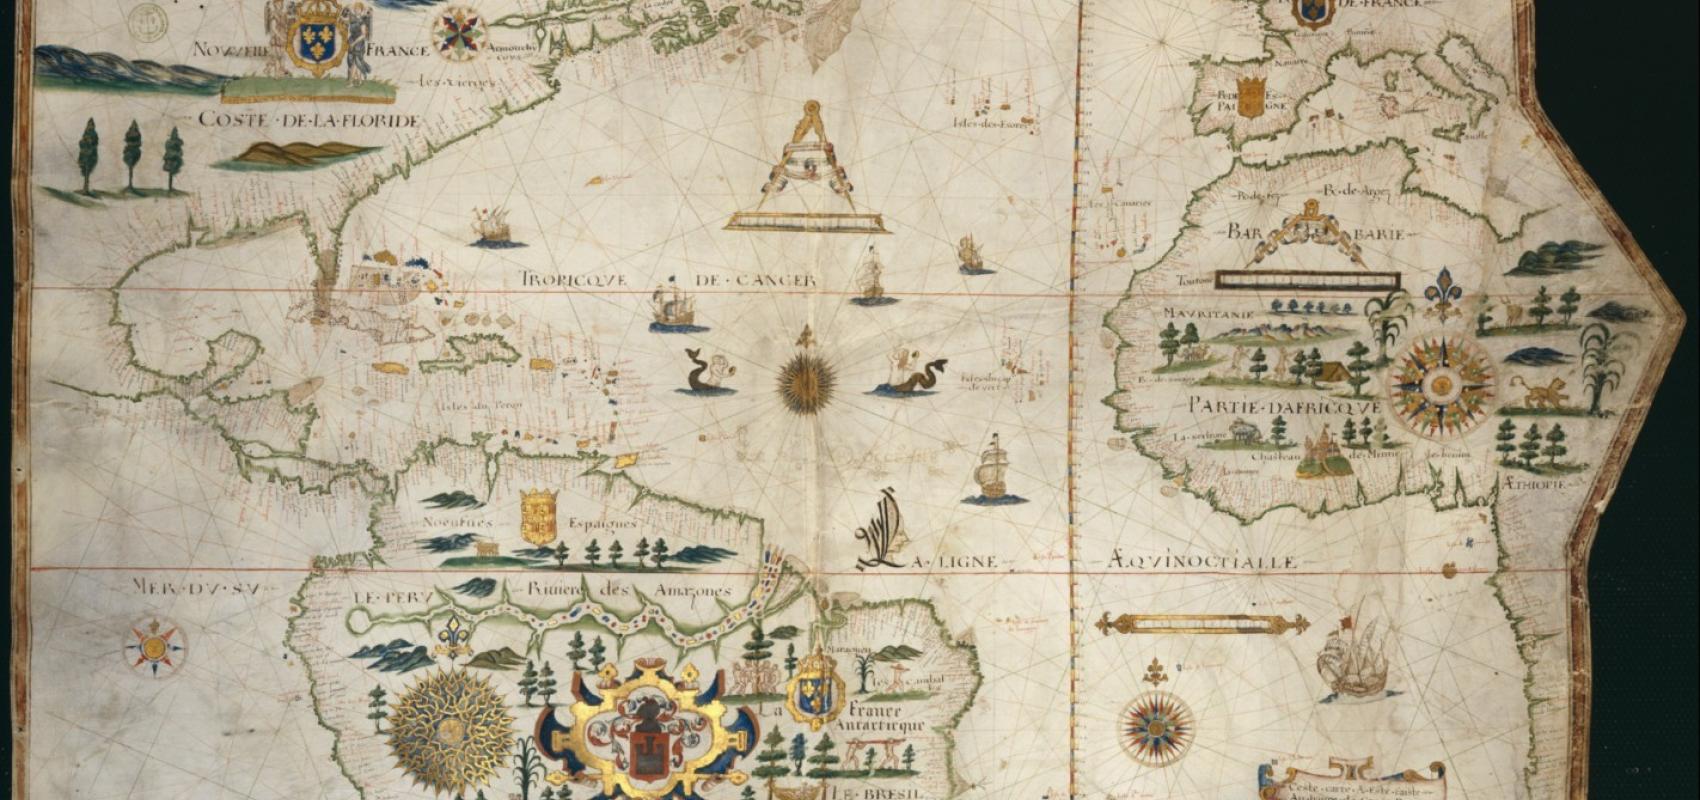 Carte de l'Océan Atlantique, Le Havre, Pierre de Vaulx, , 1613. BnF, département des Cartes et plans -  - BnF